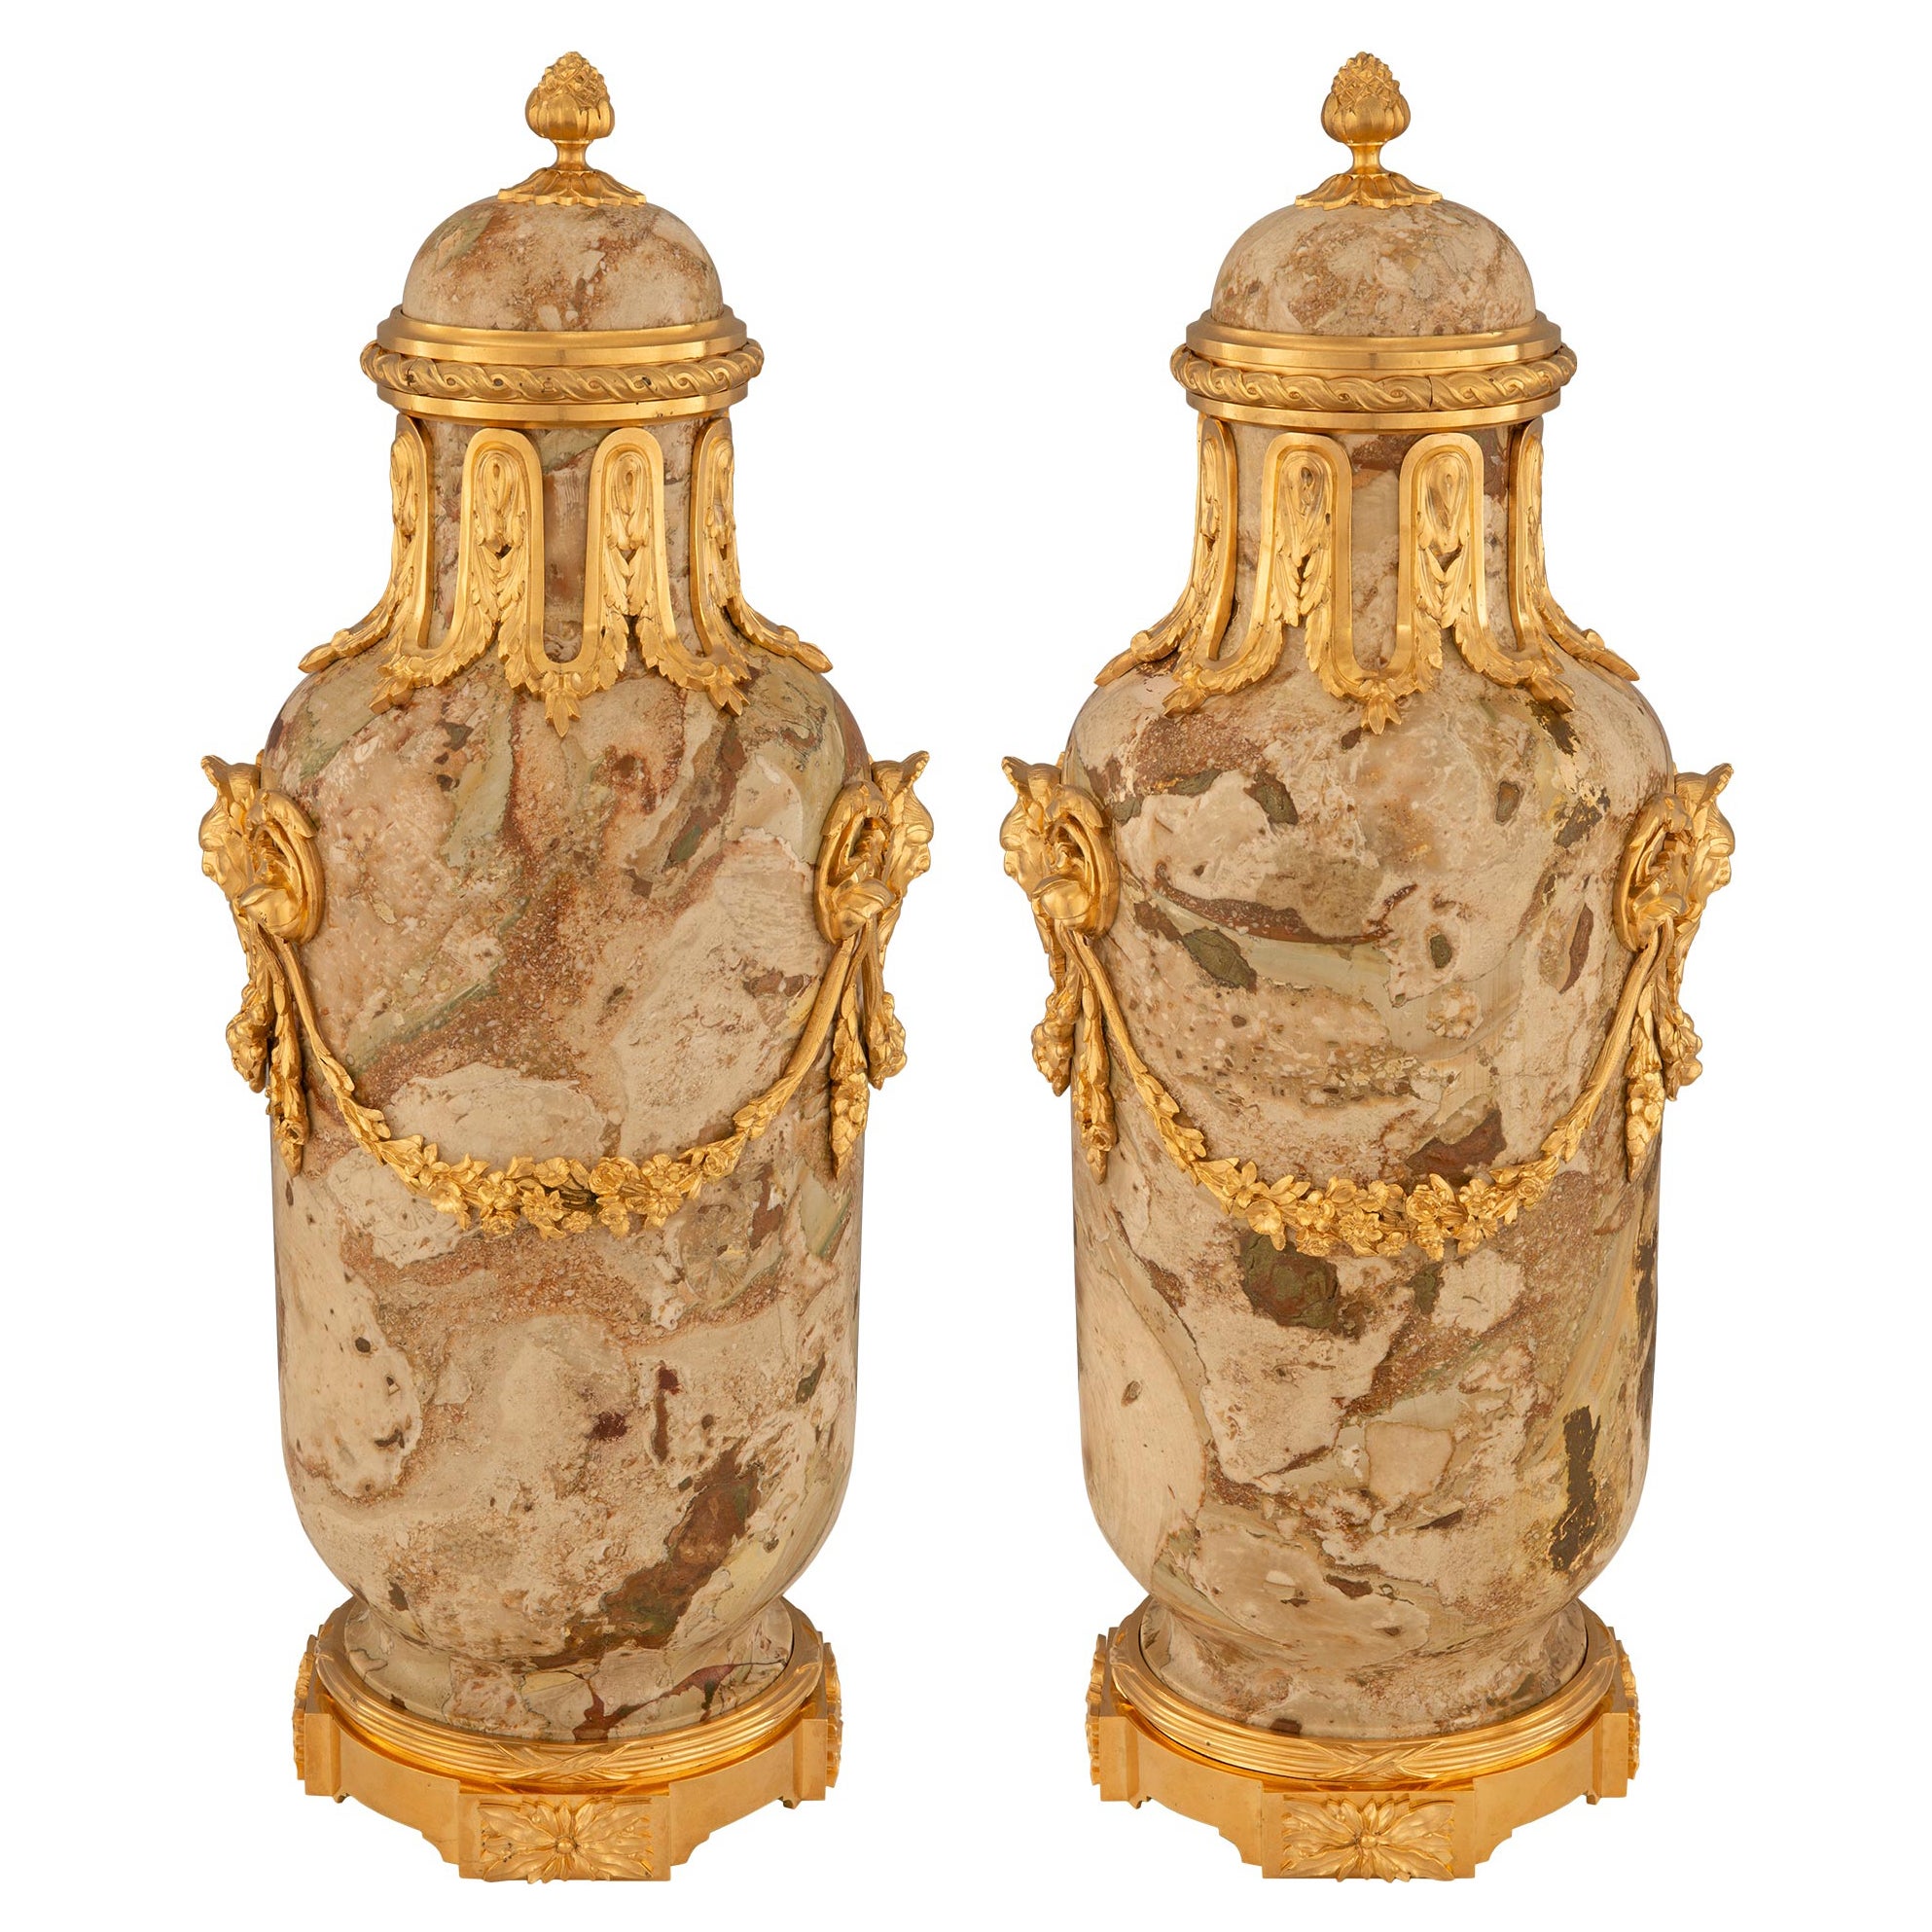 Paire d'urnes à couvercle en ormolu et marbre du 19e siècle de la période Belle Époque française